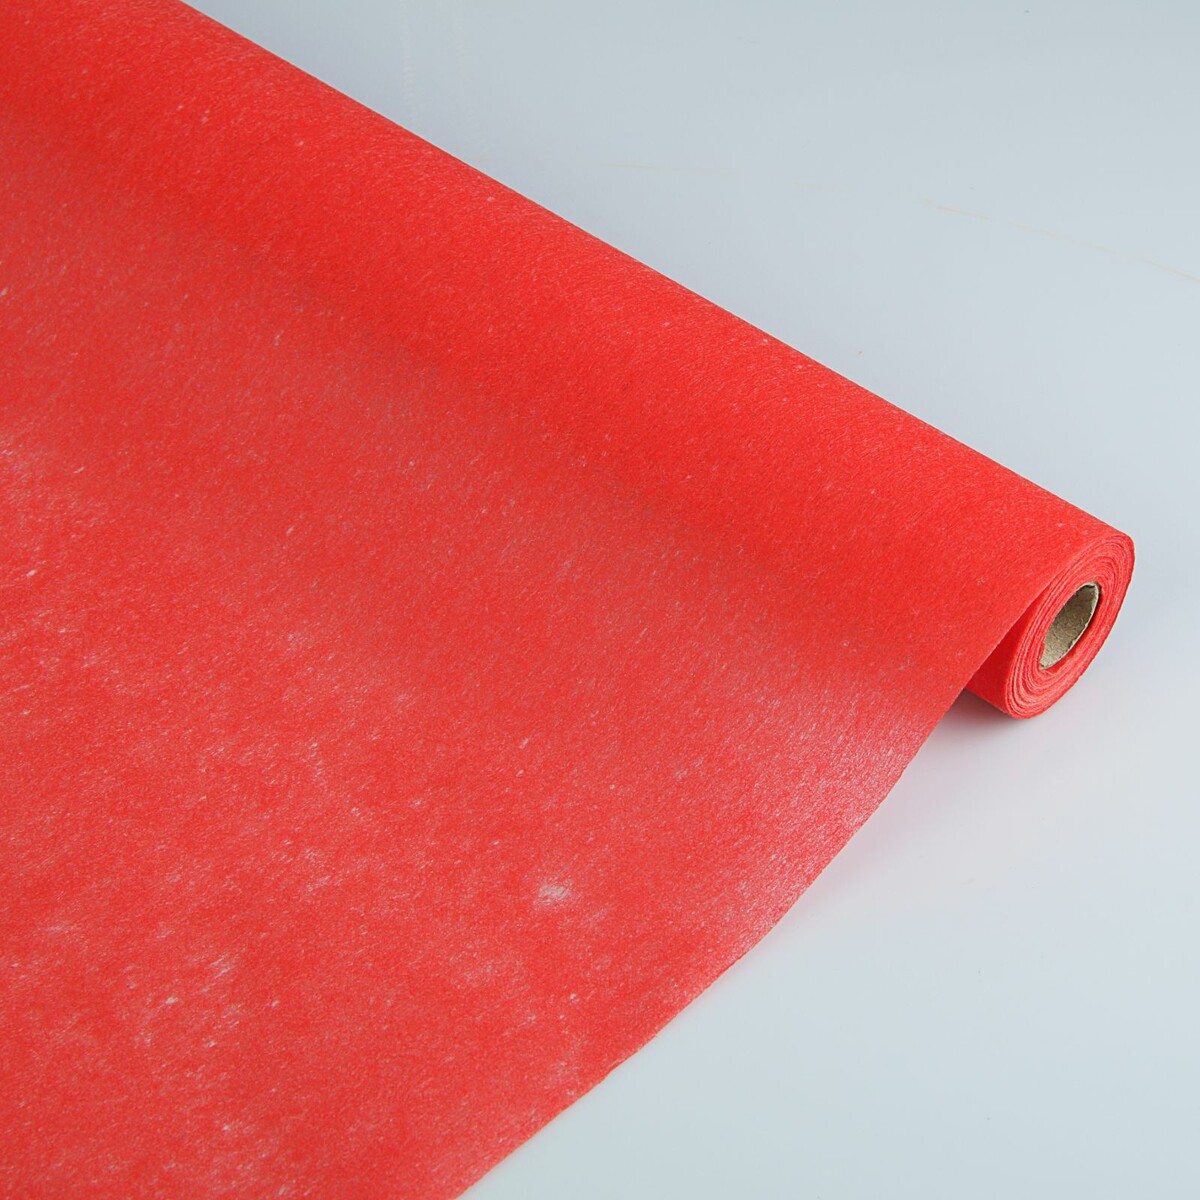 Фетр для упаковок и поделок, однотонный, красный, двусторонний, рулон 1шт., 50 см x 15 м фетр для упаковок и поделок однотонный голубой двусторонний рулон 1шт 50 см x 15 м